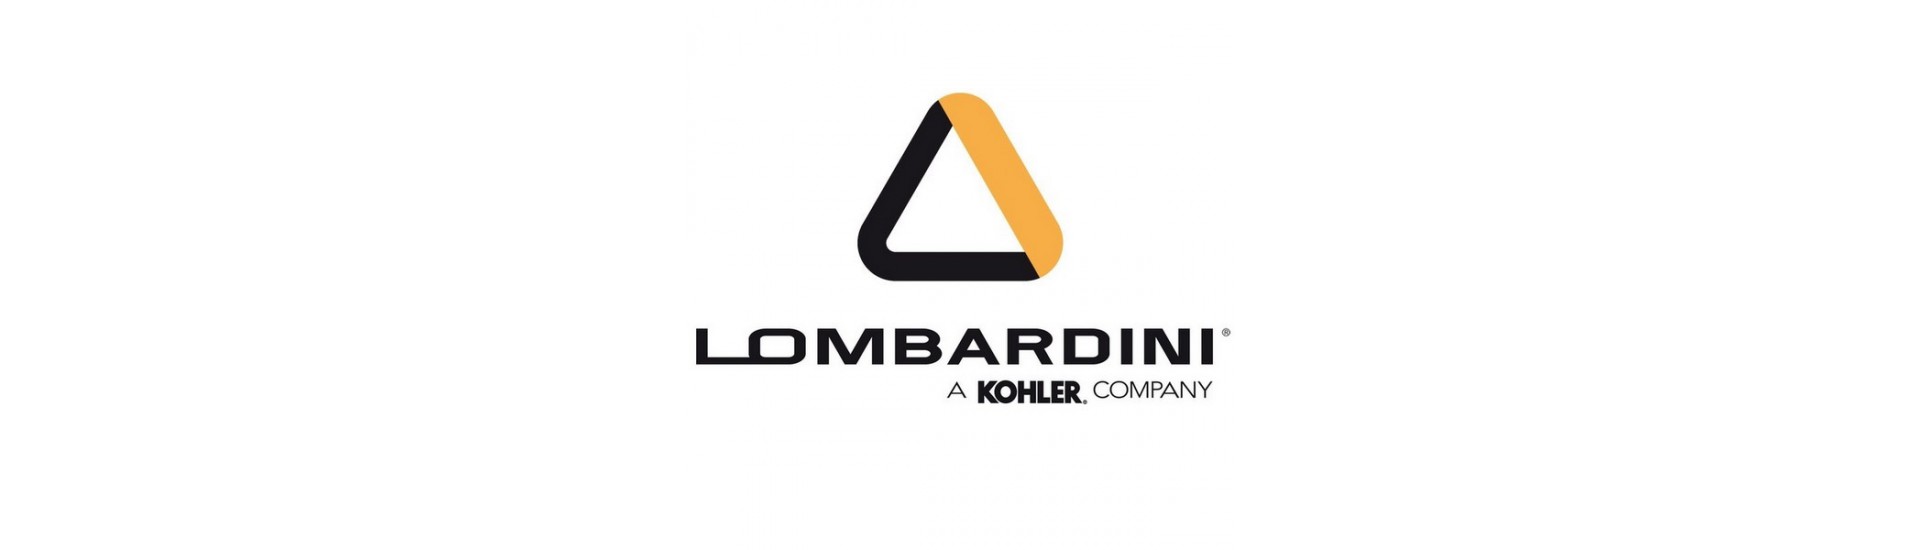 Pièces occasion moteur Lombardini au meilleur prix